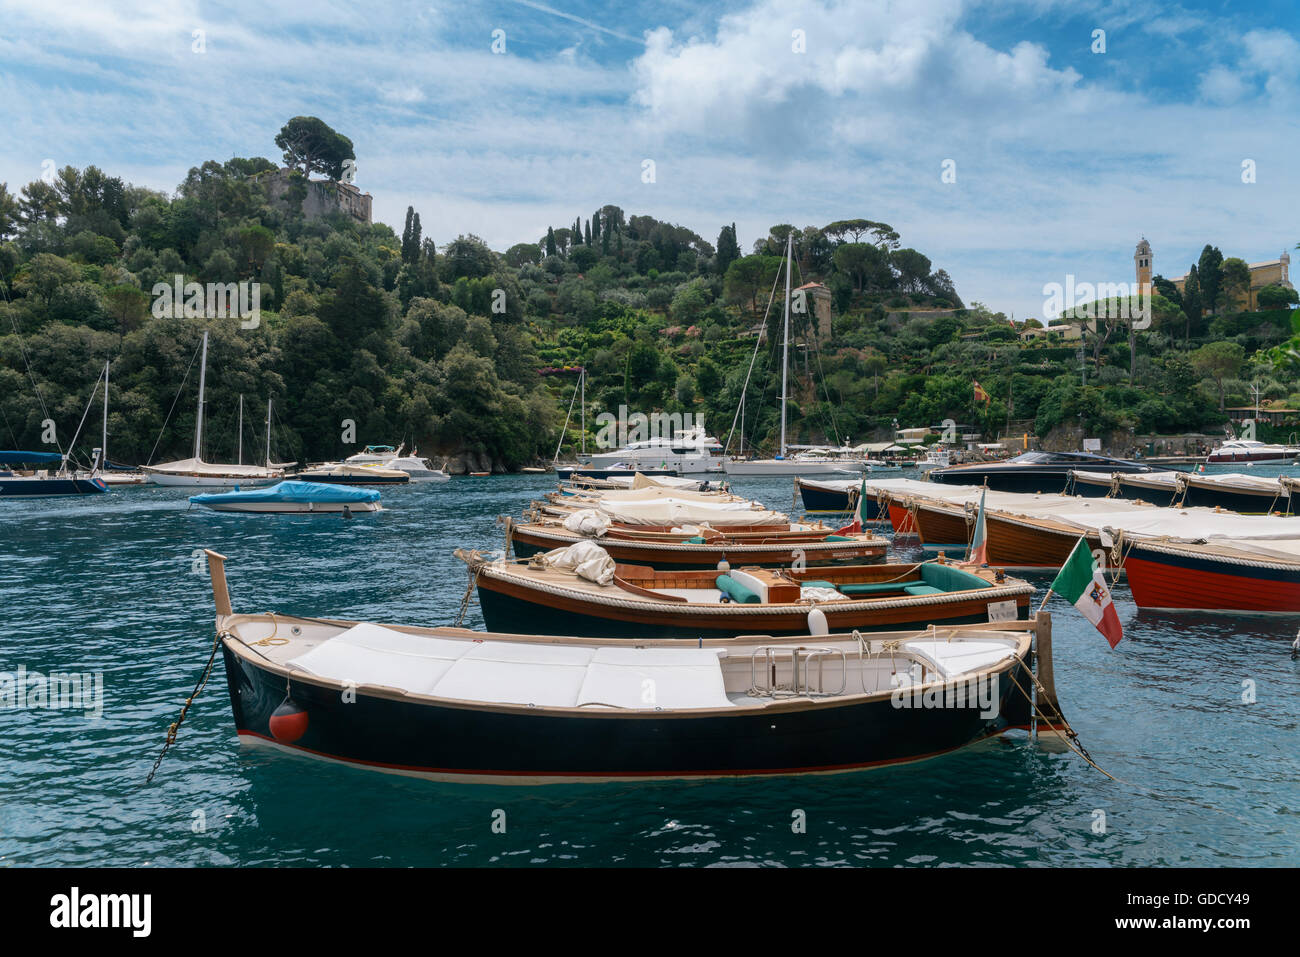 Portofino, est un village de pêcheurs, province de Gênes, en Italie. Un lieu de villégiature avec un port pittoresque Banque D'Images